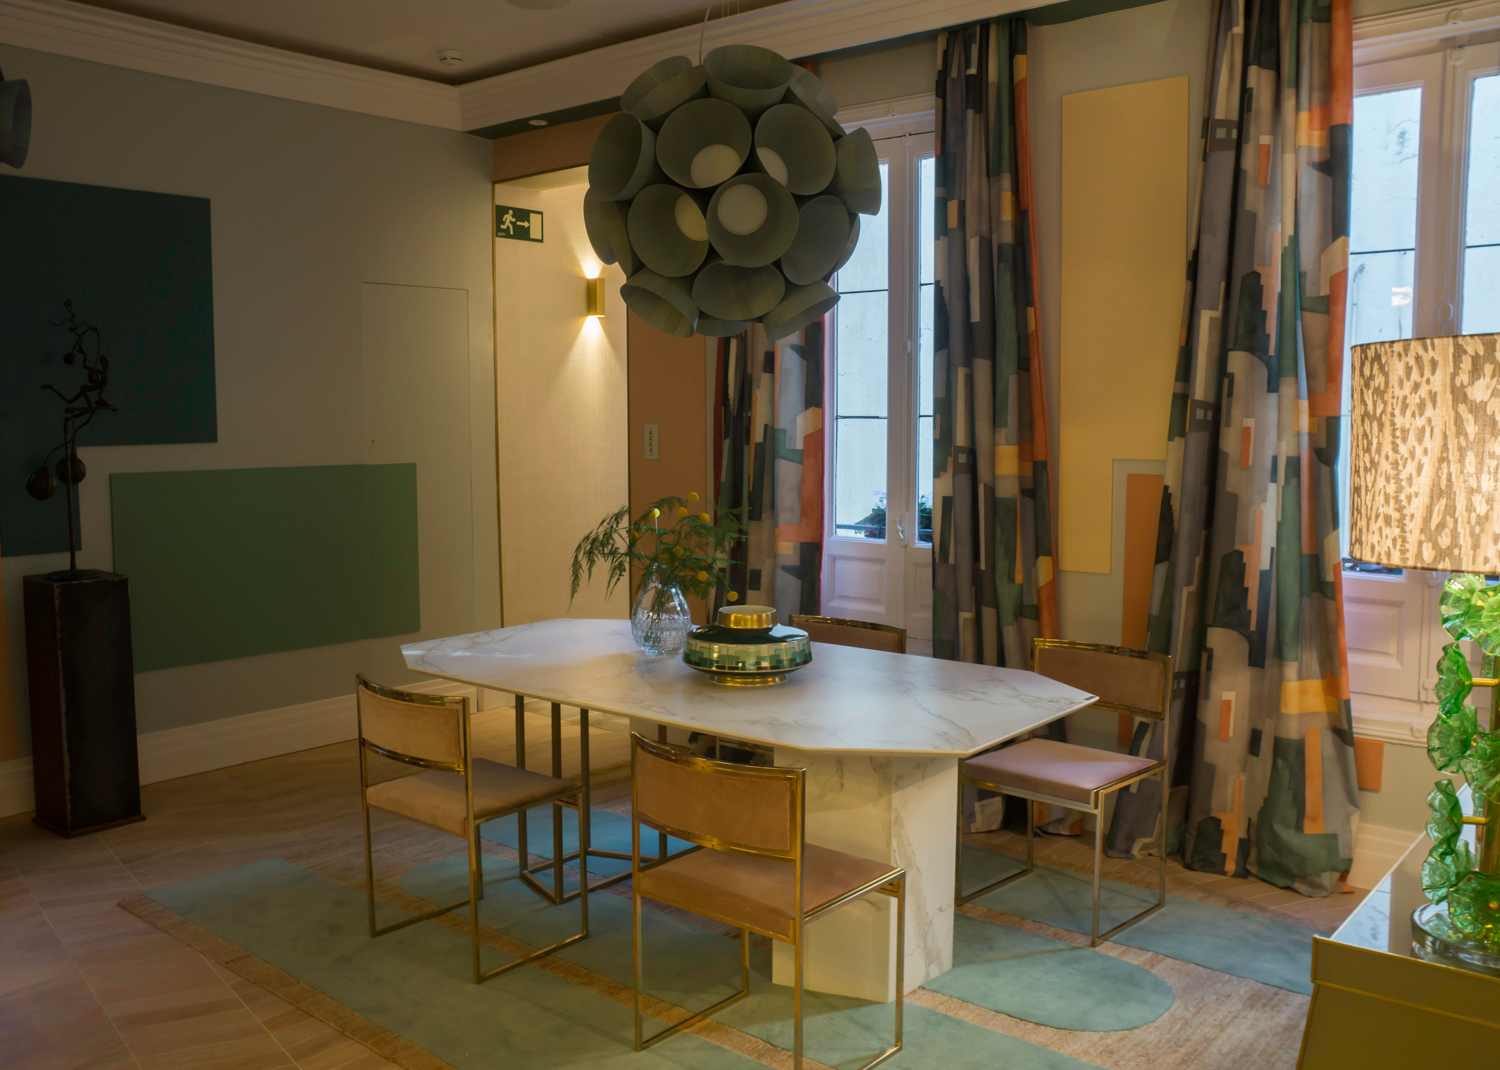 Dining room from AS Interiorista at Casa Decor 2018